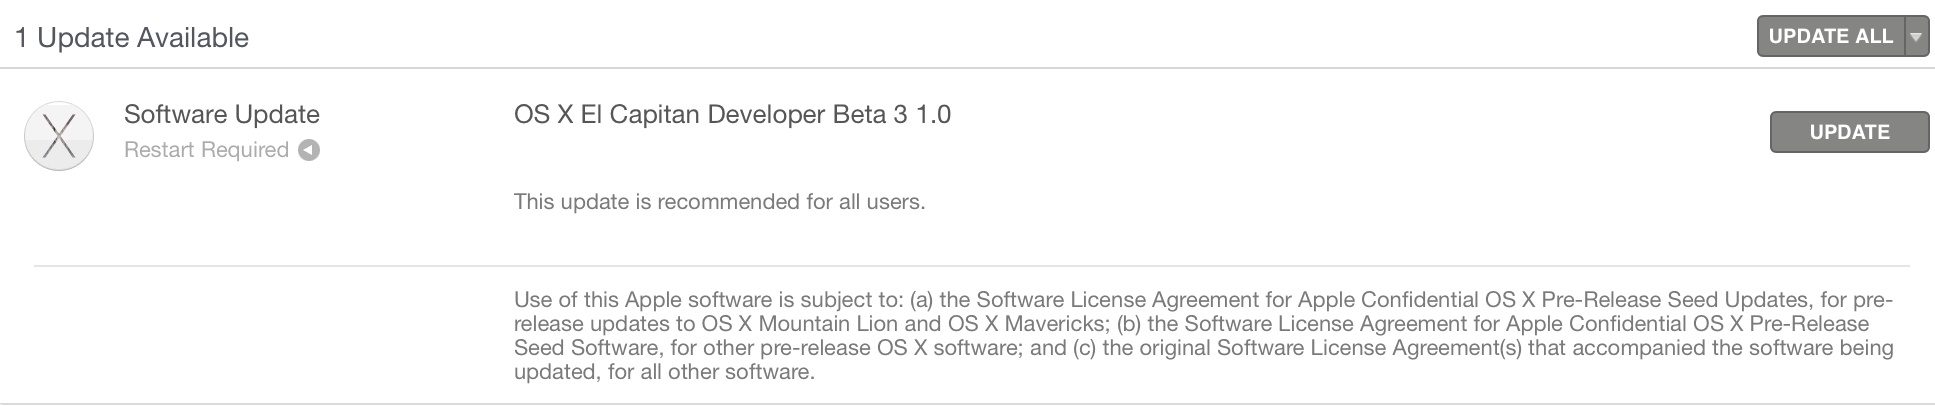 OS X El Capitan разработчик beta 3 1.0 скачать